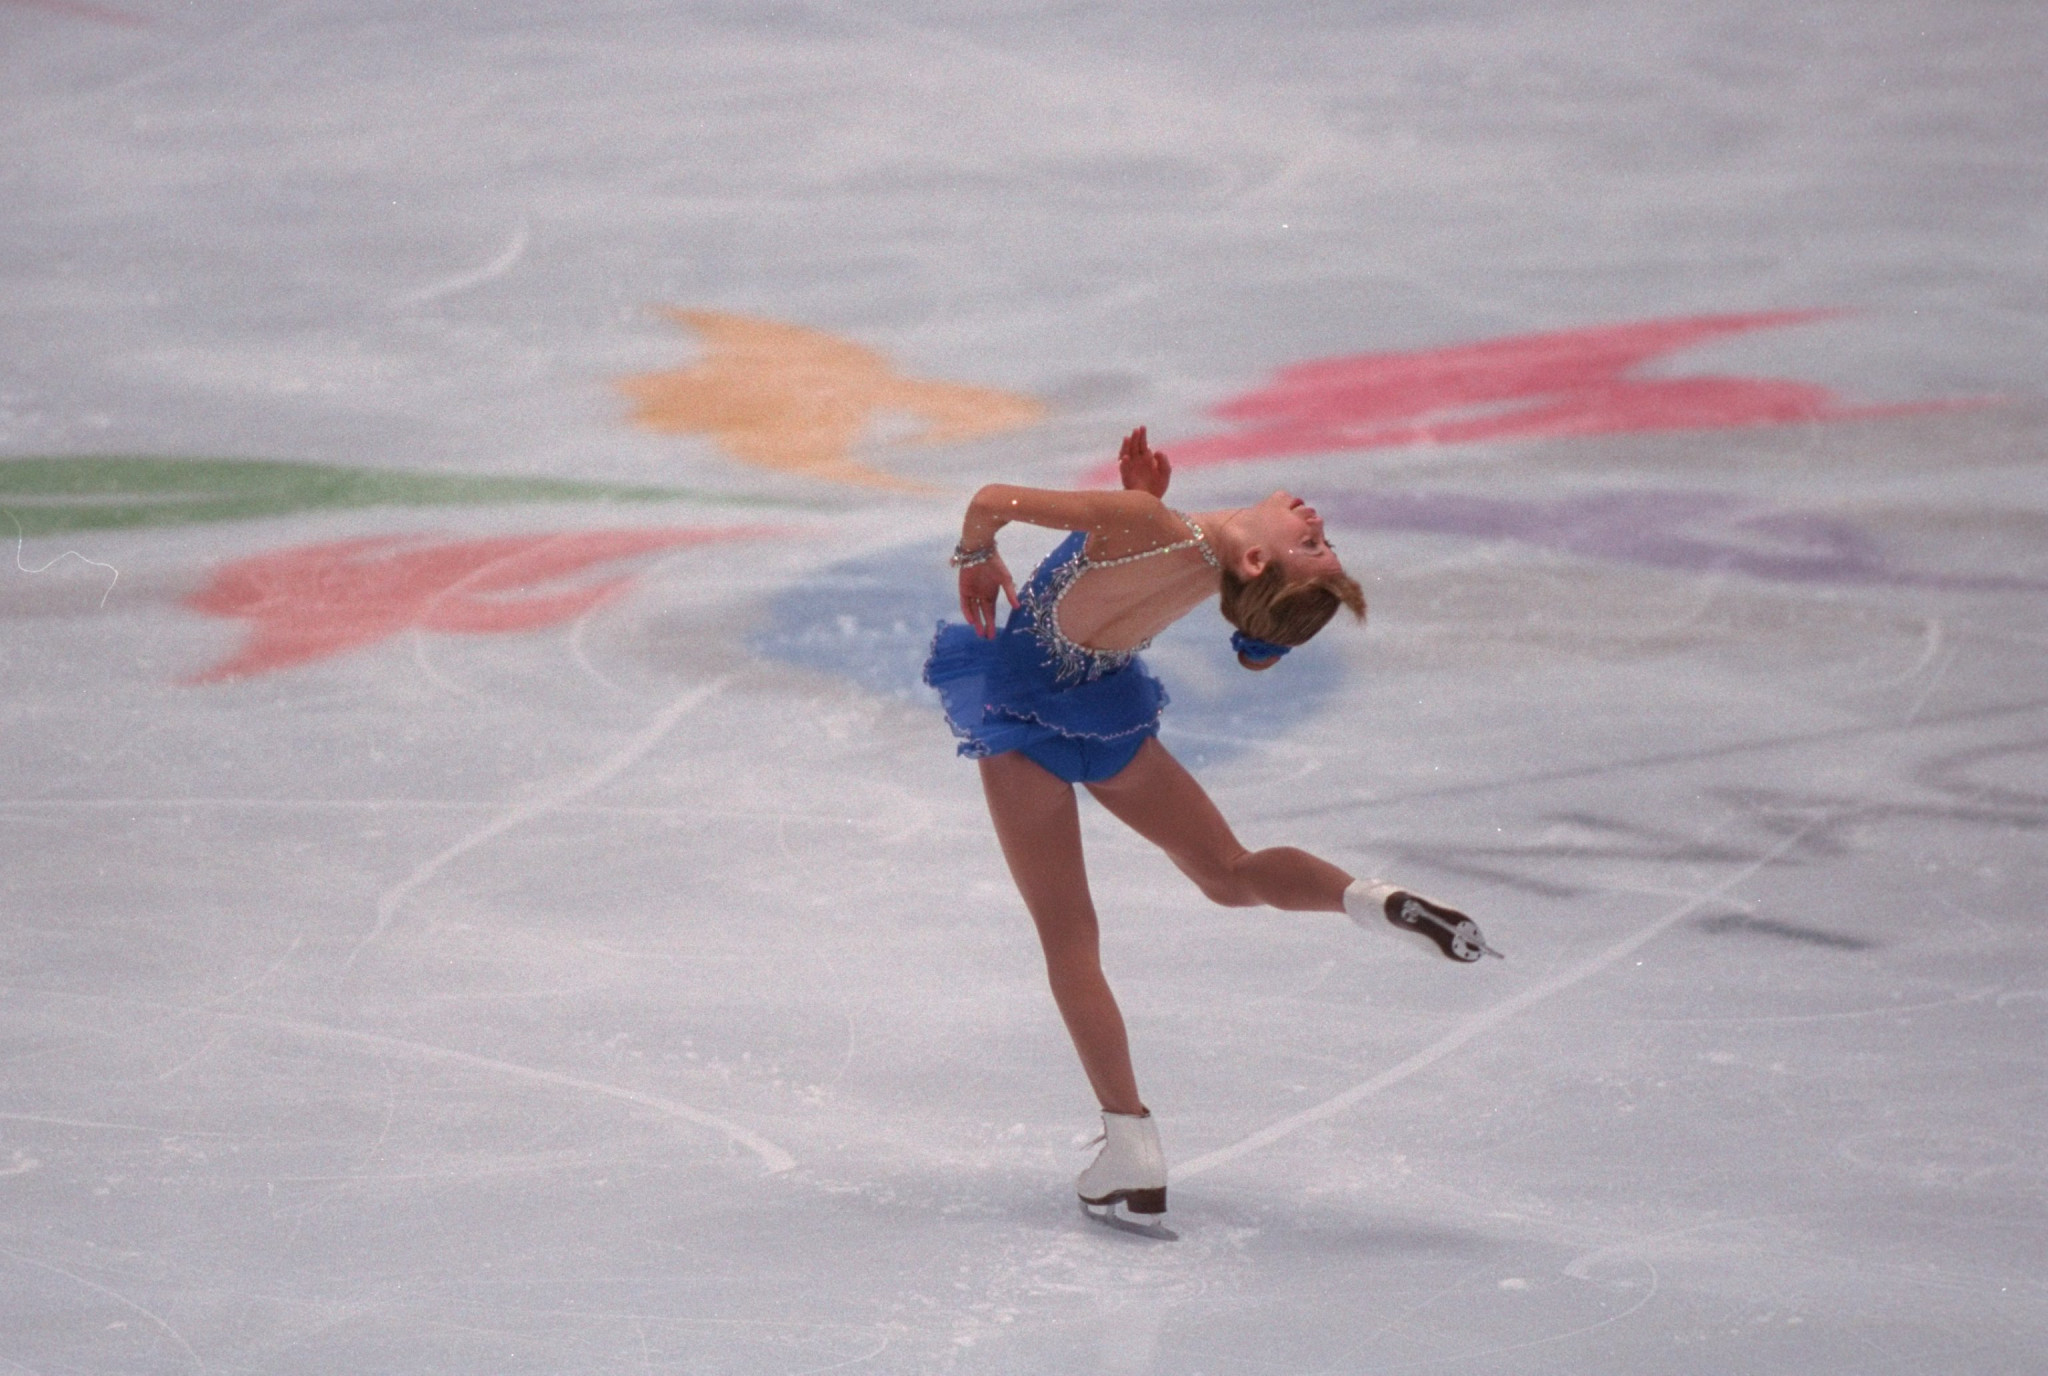 Tara Lipinski was 15 when she won gold at the Nagano 1998 Winter Olympics ©Getty Images